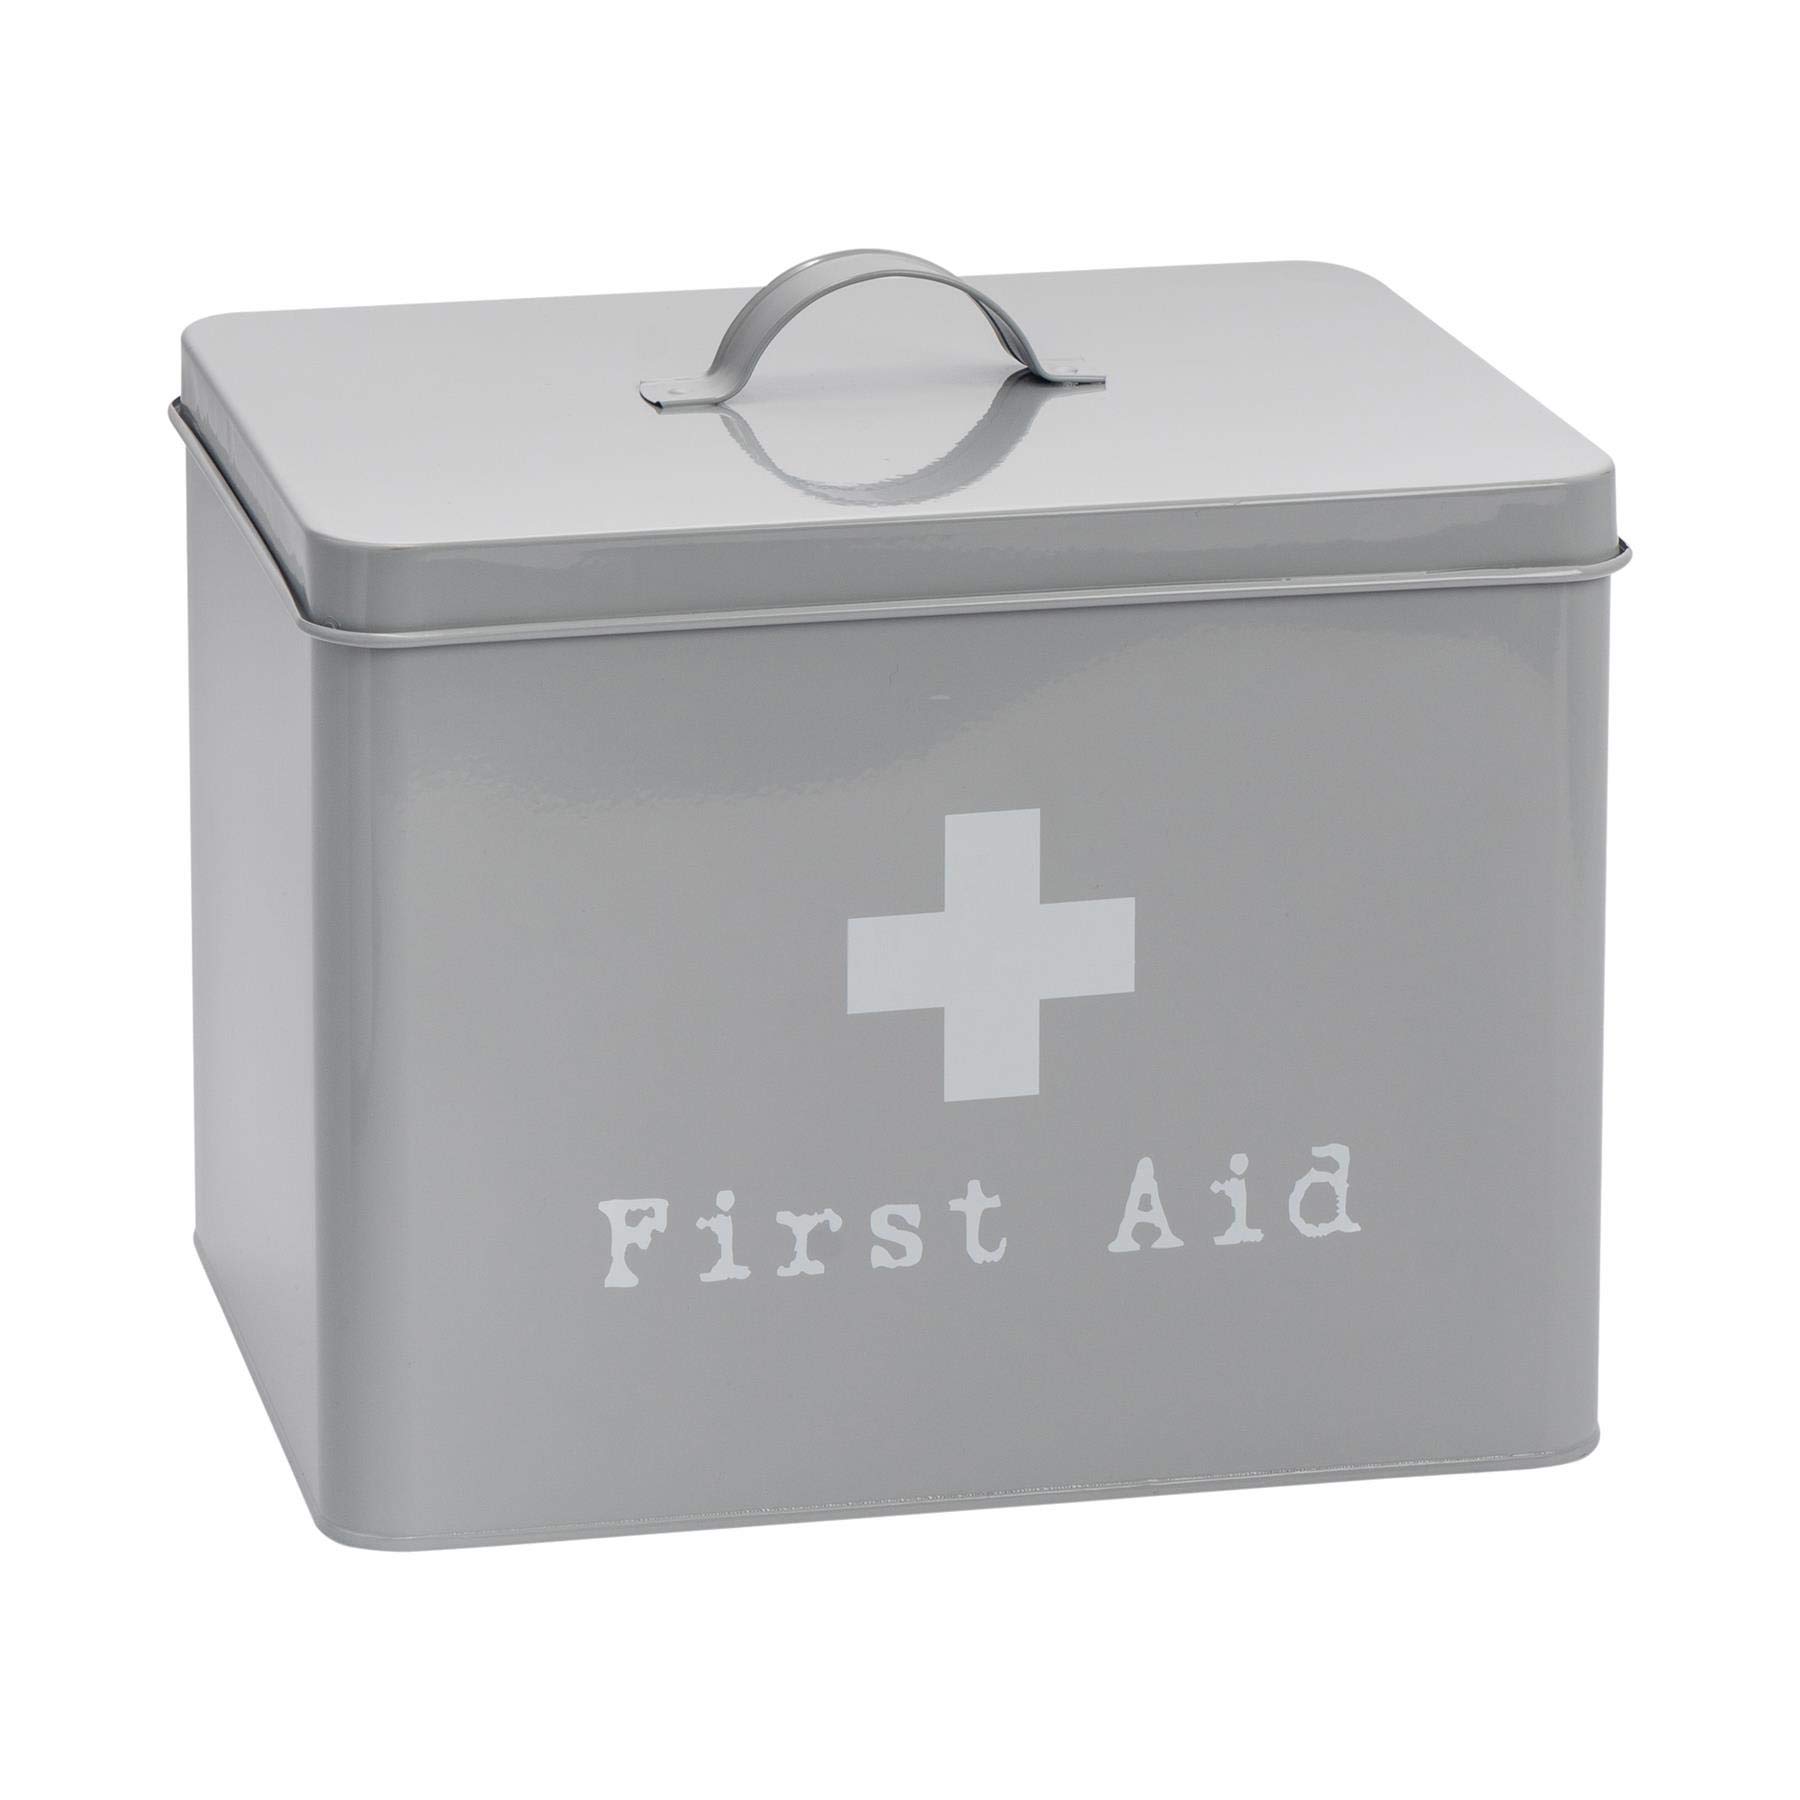 Harbour Housewares Kasten für Erste-Hilfe-Zubehör und Medikamente - Metall im Vintage-Look - Grau